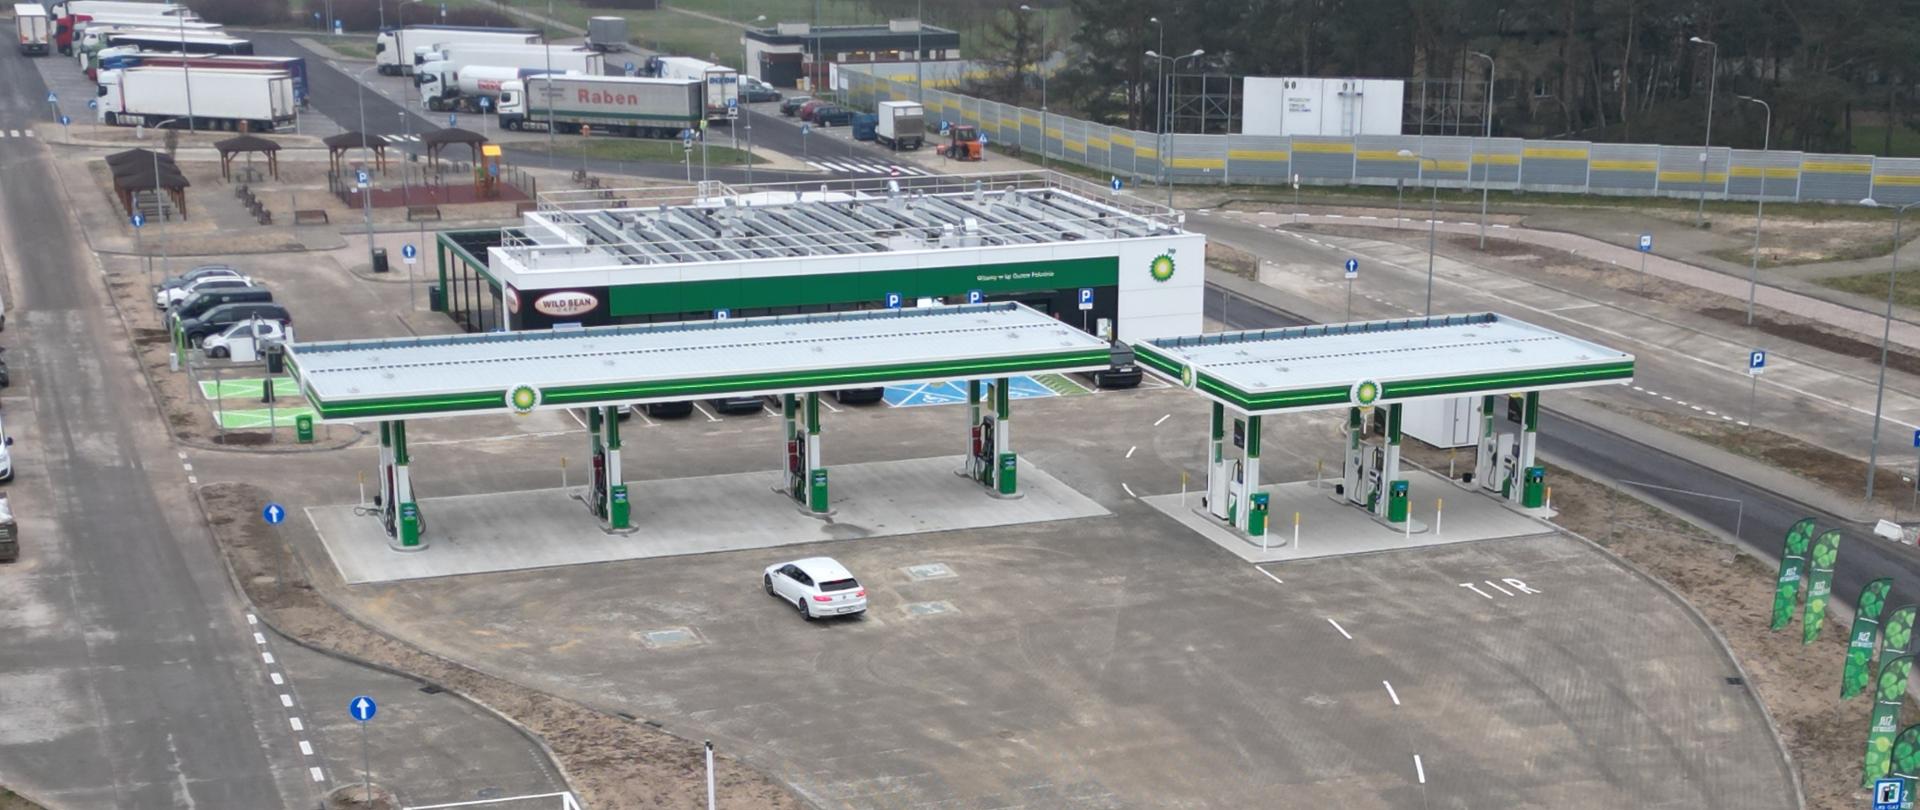 Zdjęcie z powietrza przedstawiające MOP Guzew. Widoczna stacja benzynowa oraz parking dla pojazdów ciężarowych oraz plac zabaw.